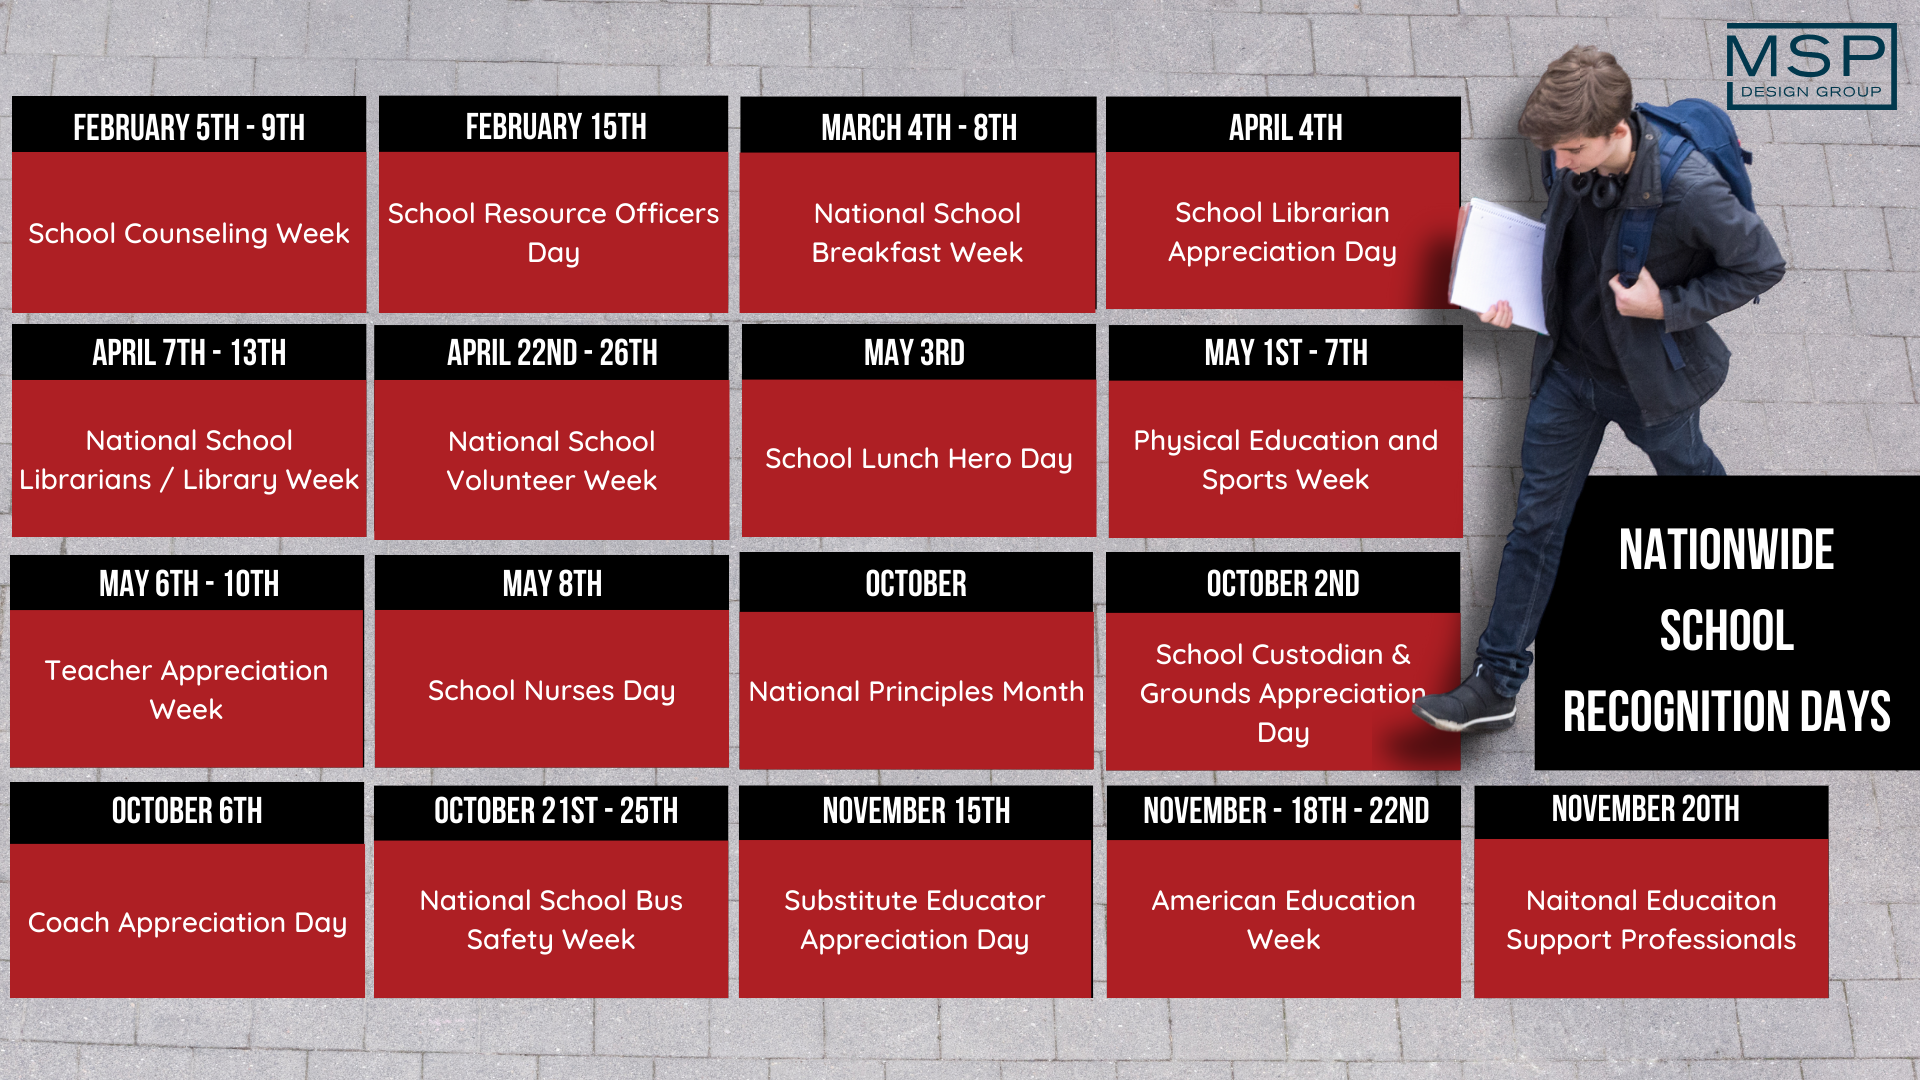 Employee Appreciation Calendar - Schools